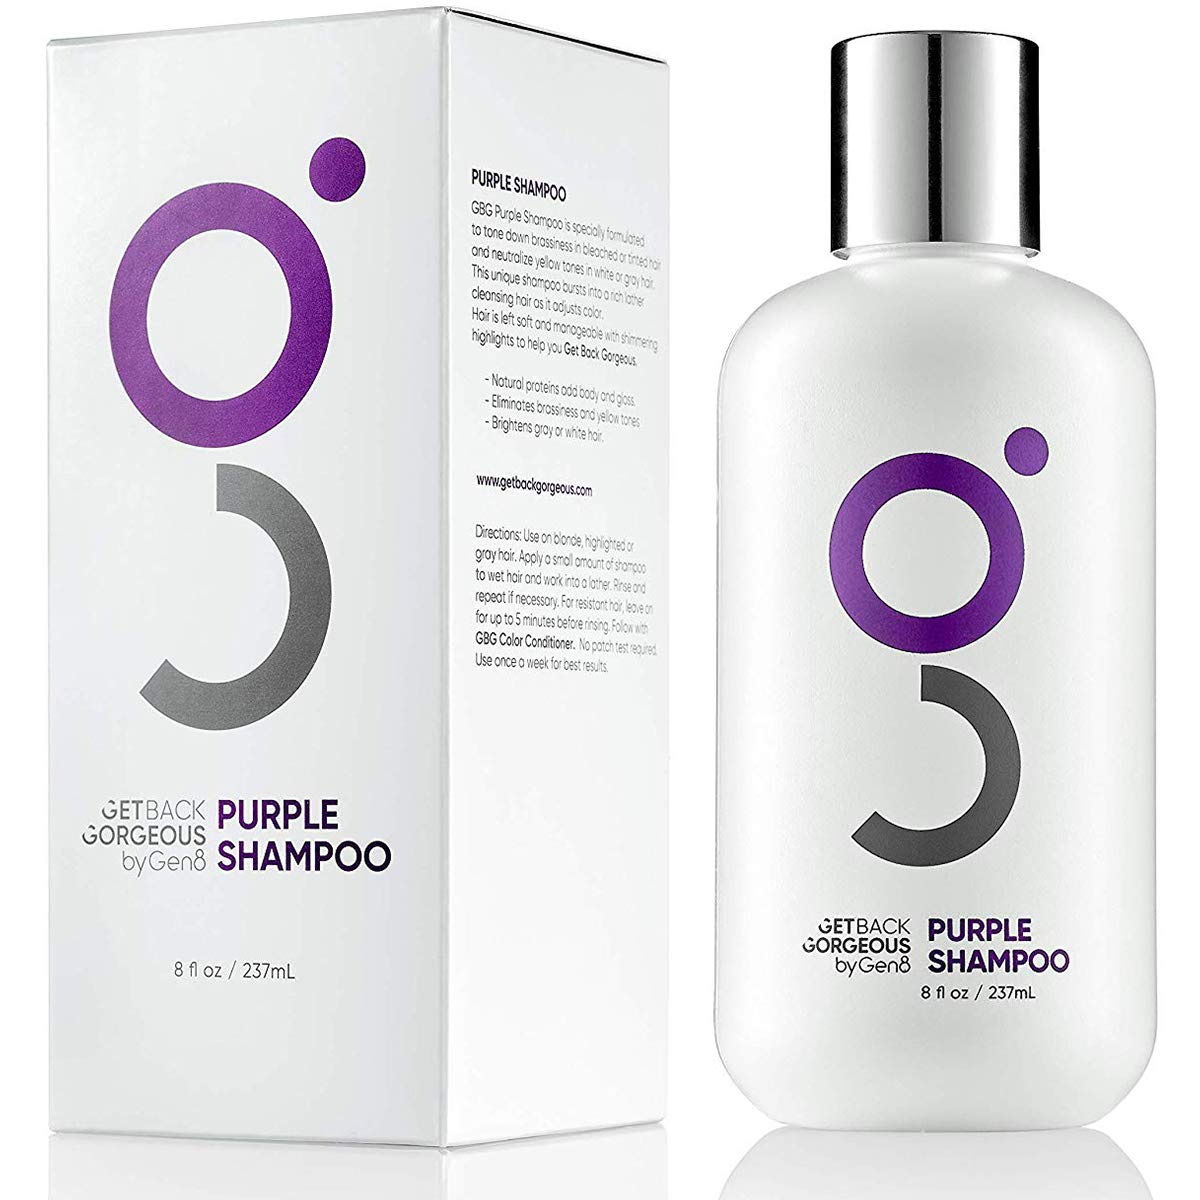 The Purple Shampoo of